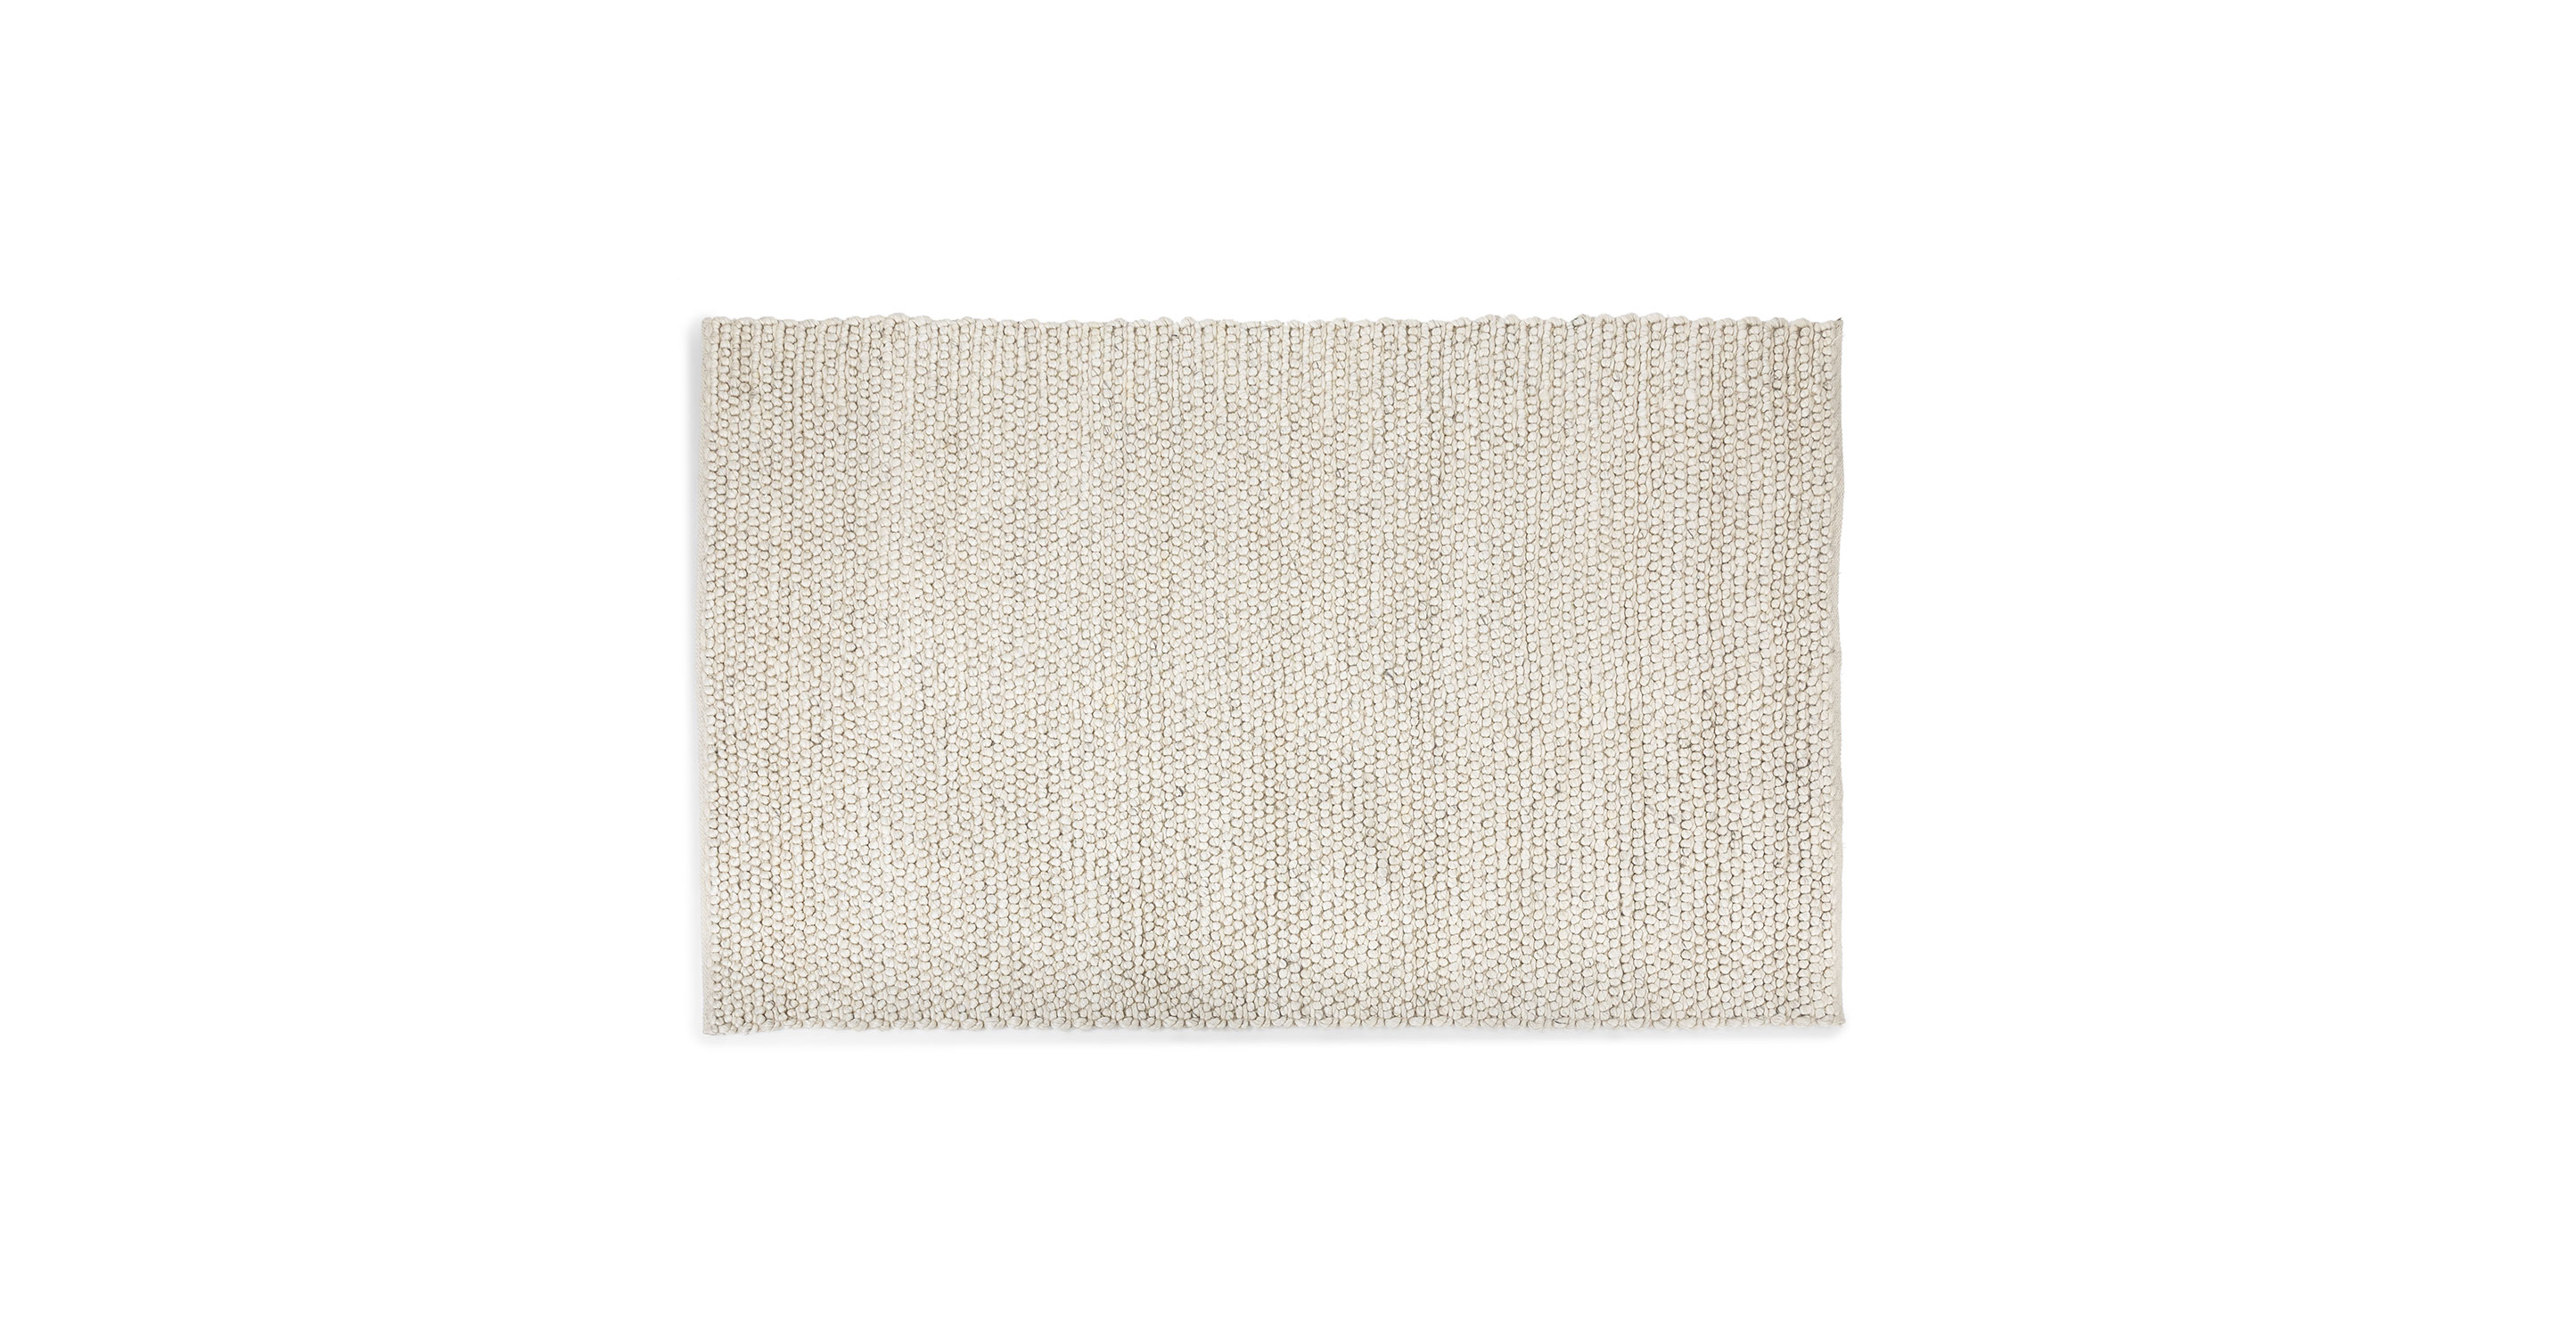 Cotton Jute Brown Tone Rugs Neutral Stripe 5 Sizes Fair Trade